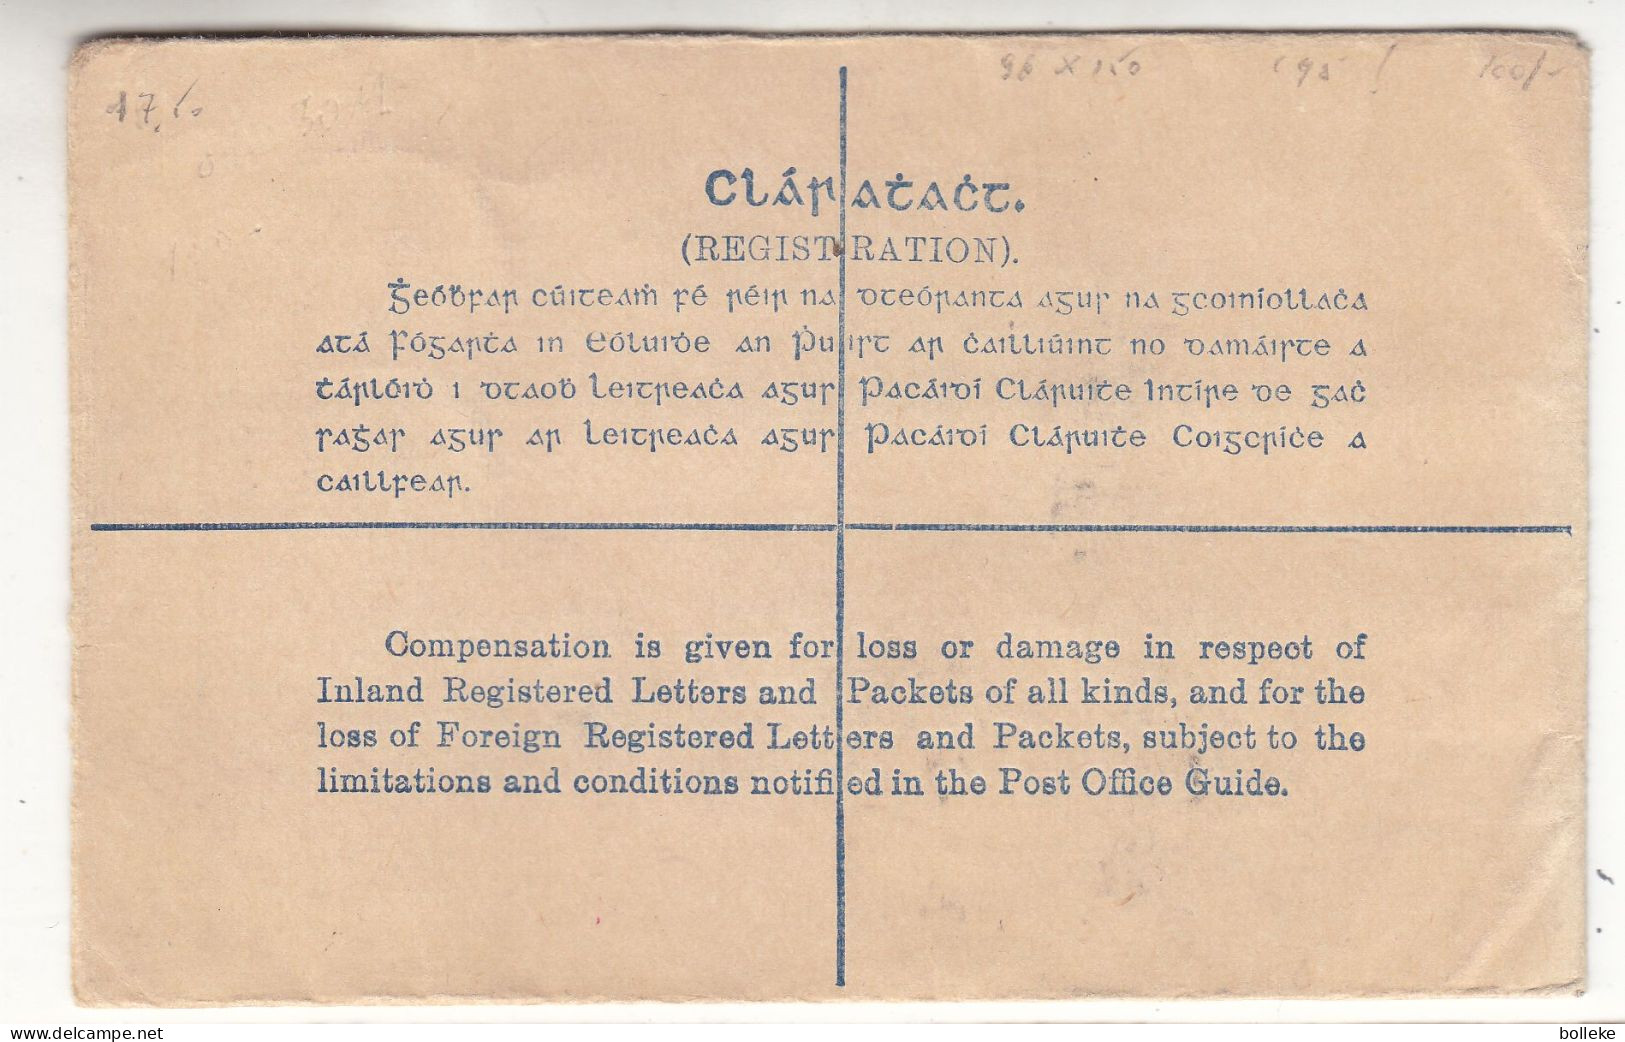 Irlande - Lettre De 1931 - Entier Postal - Expédié Vers Anvers - Mesure 96 X 150 - Valeur 95 €  ! - Covers & Documents